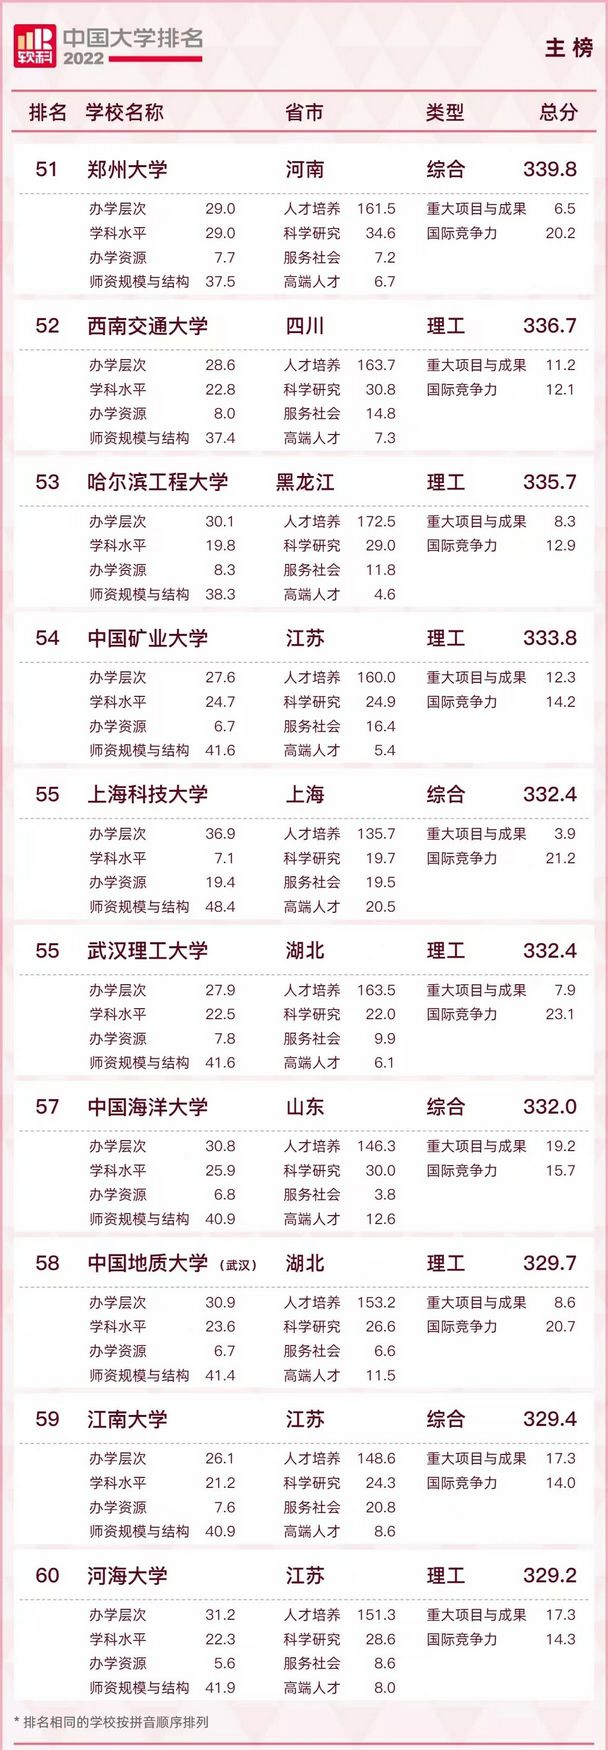 最新2022中国大学排名发布,2022年中国大学最新排名